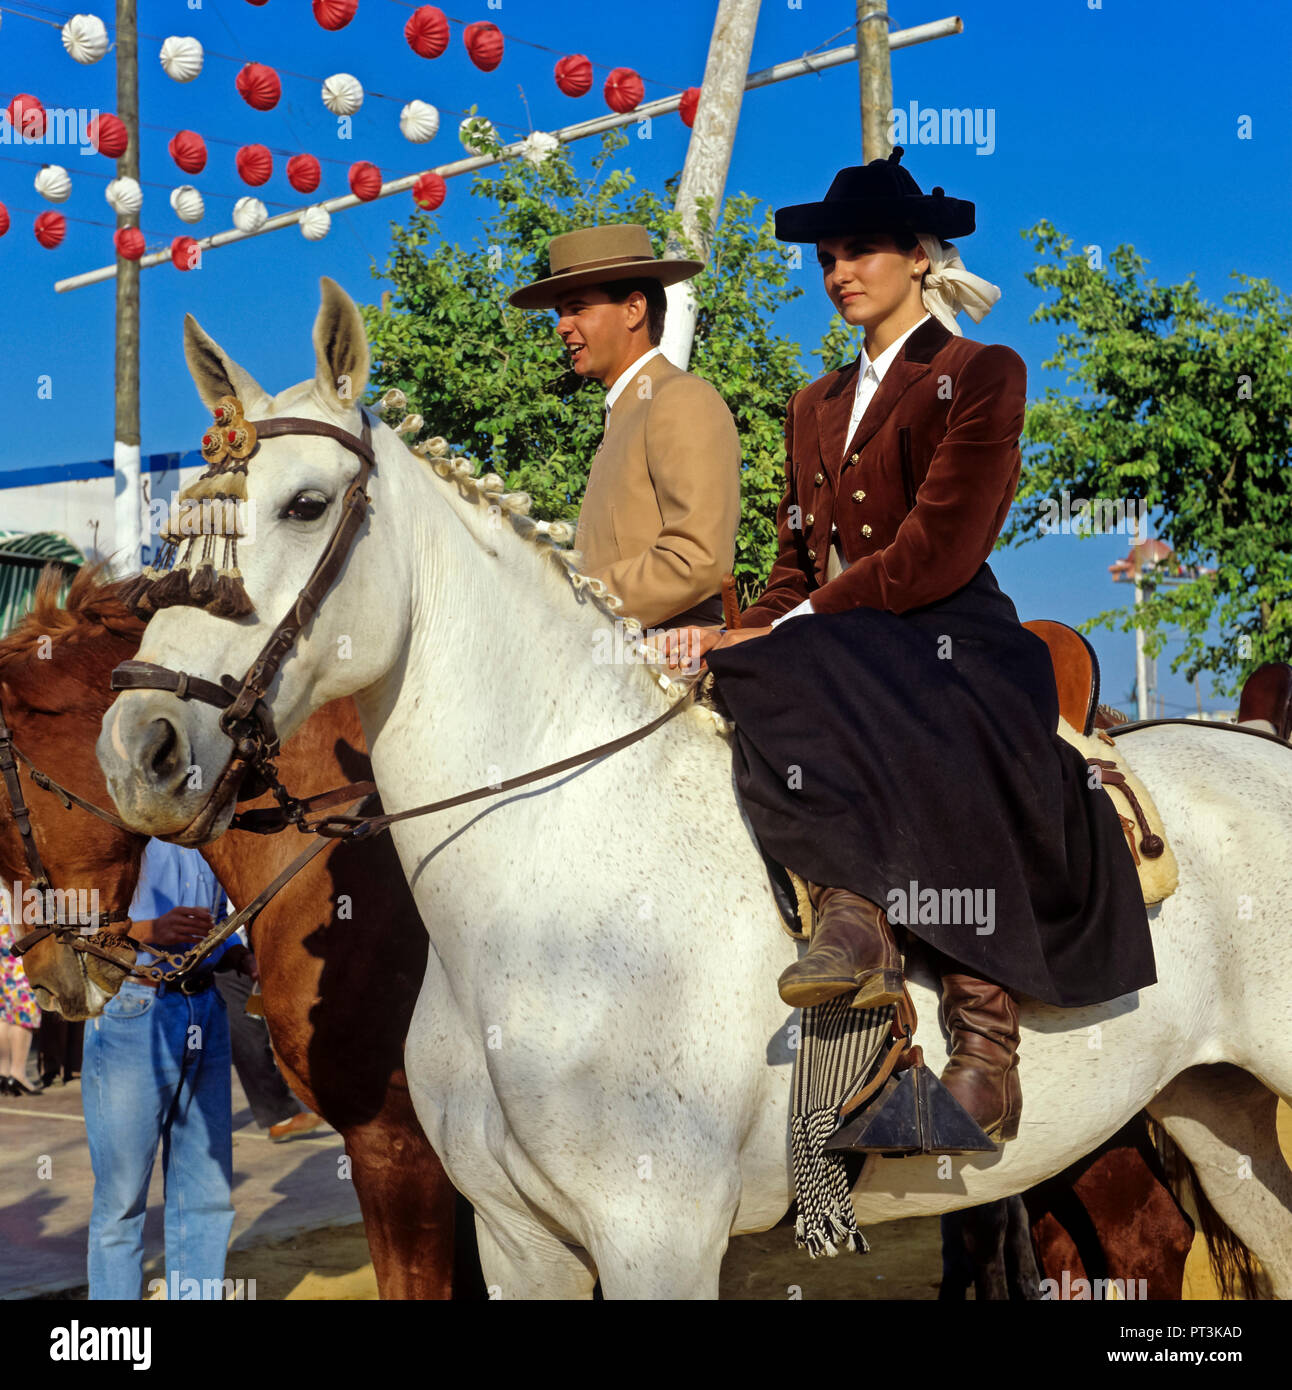 Woman horse riding amazon immagini e fotografie stock ad alta risoluzione -  Alamy